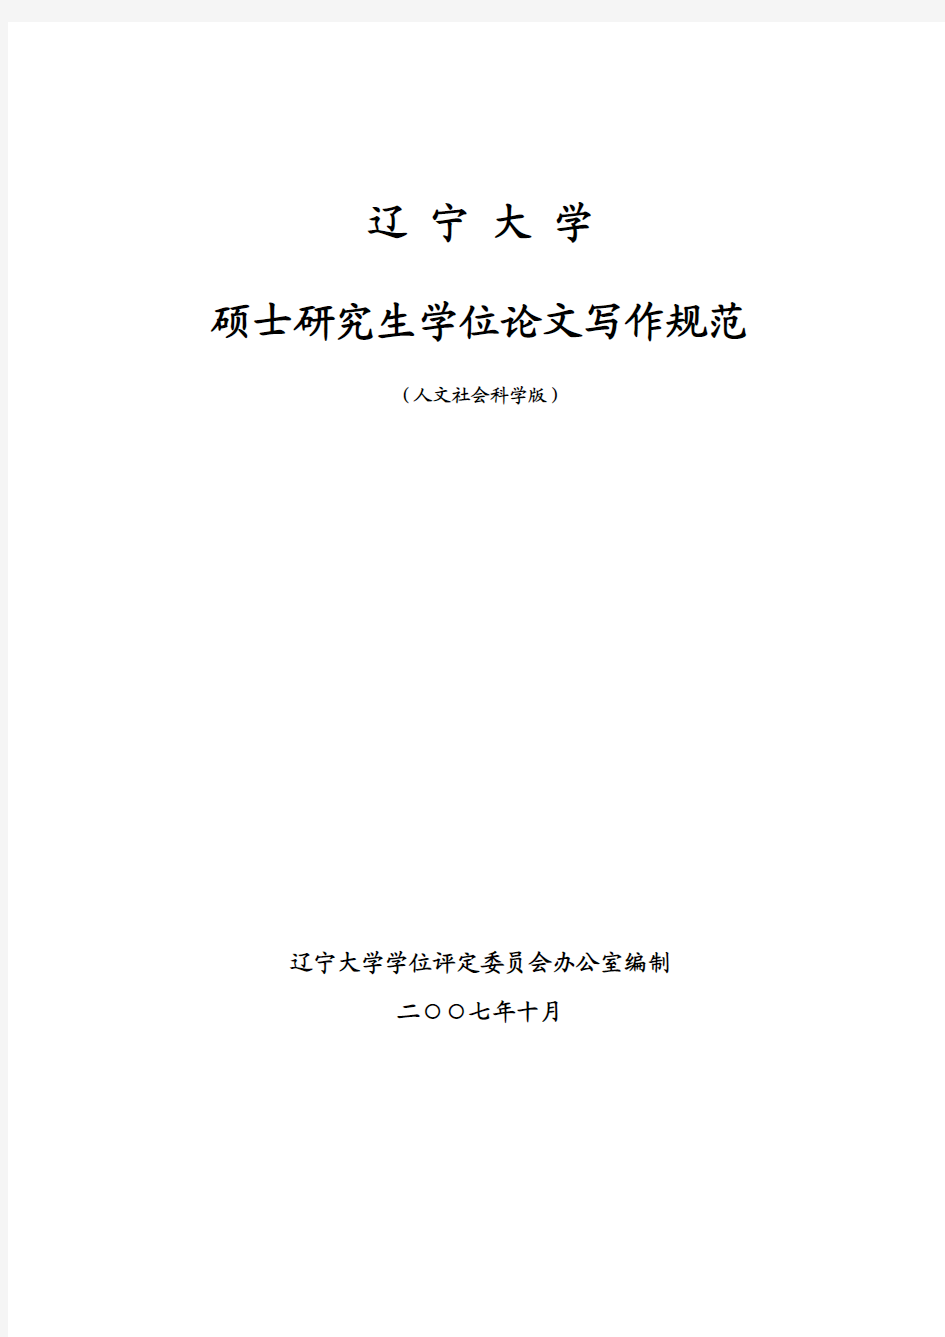 辽宁大学硕士研究生学位论文书写格式(2007版)